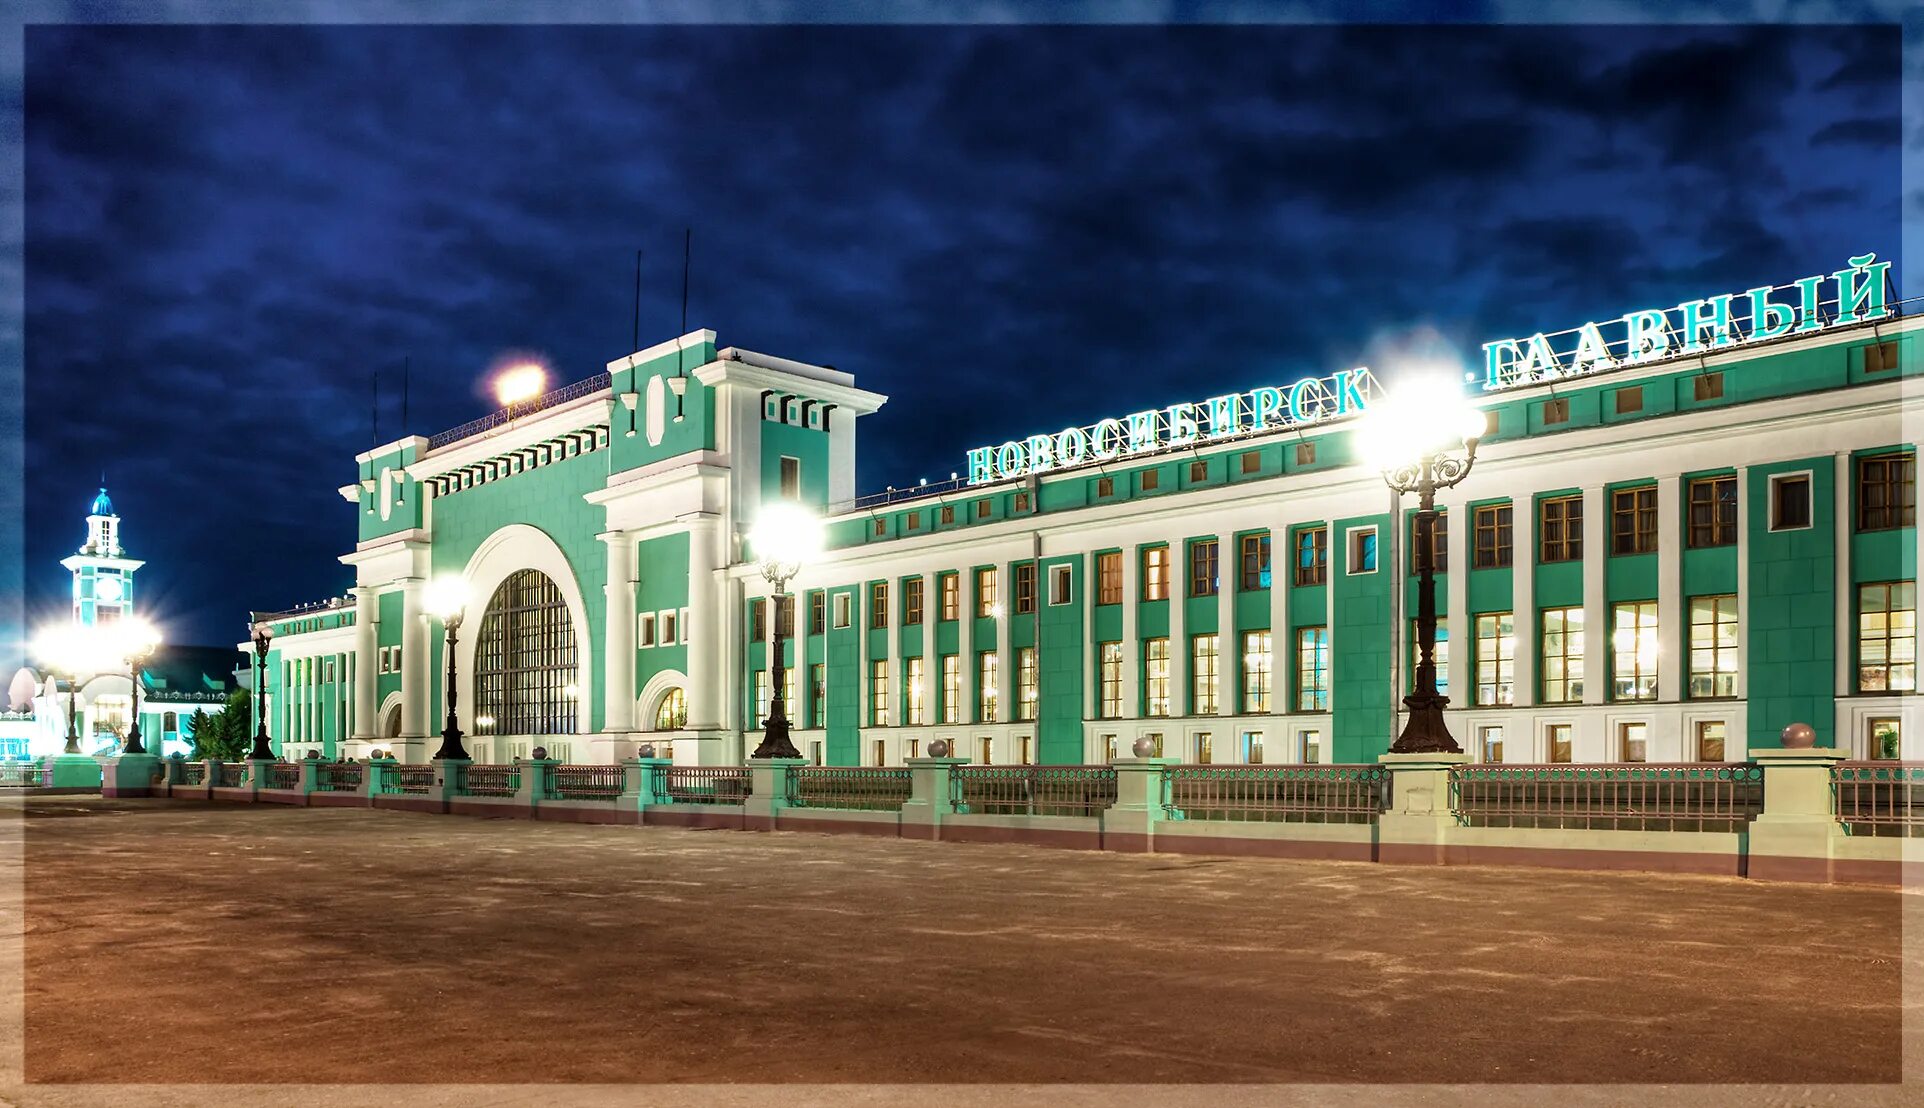 Новосибирский главный вокзал главный Новосибирск. Вокзал железнодорожной станции Новосибирск-главный. Железнодорожный вокзал Новосибирск главный. Новосибирск ЖД вокзал г Новосибирск. Новосибирск полное название